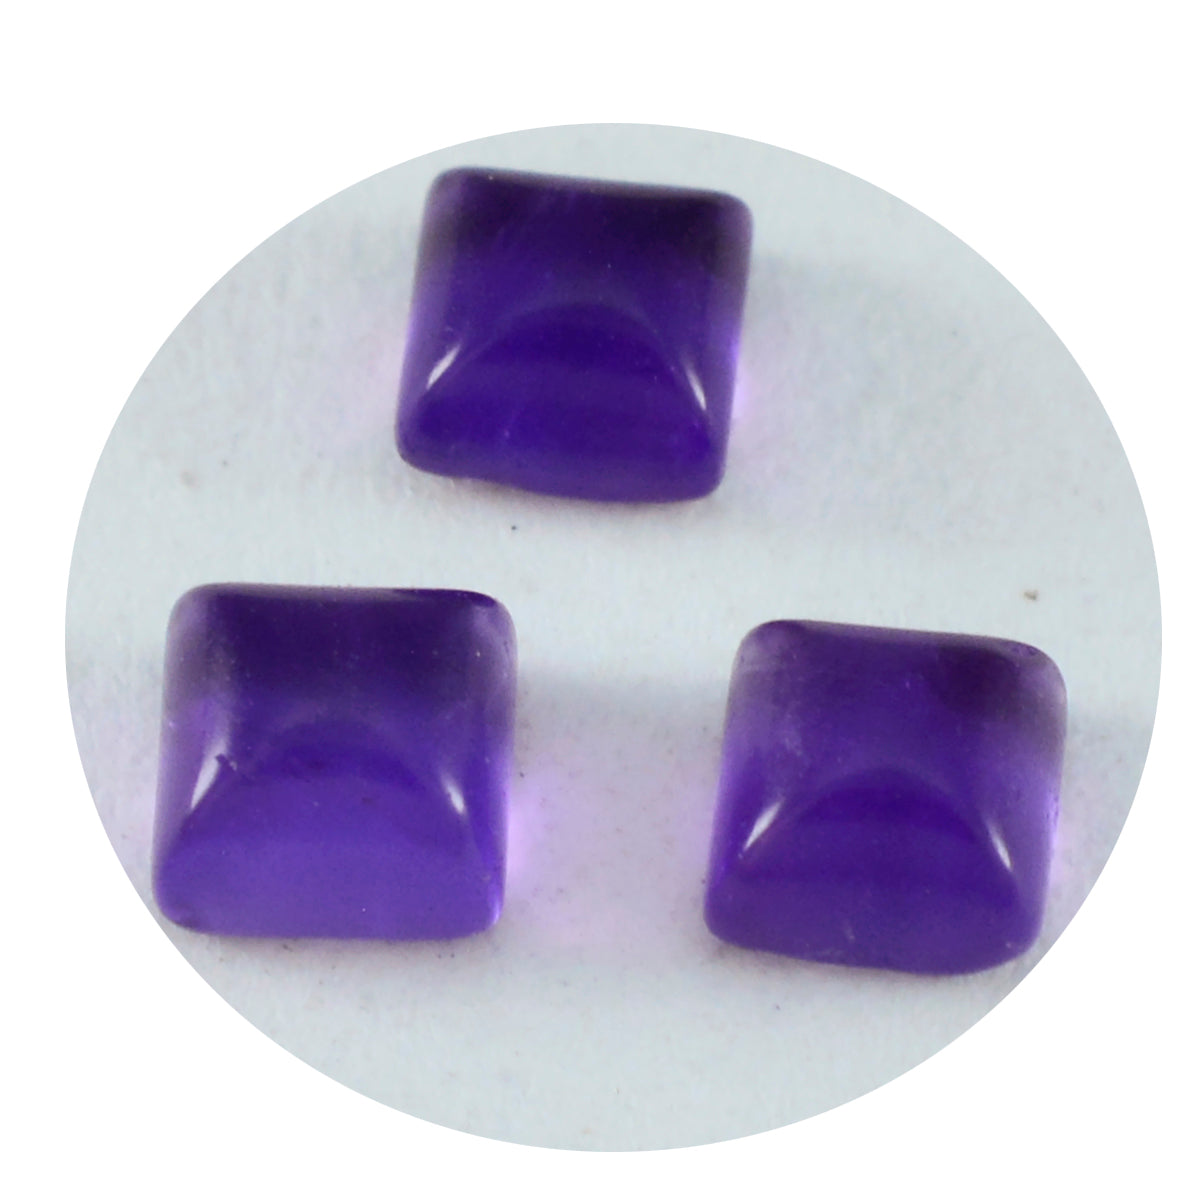 riyogems 1 шт. фиолетовый аметист кабошон 8x8 мм квадратной формы, довольно качественный драгоценный камень